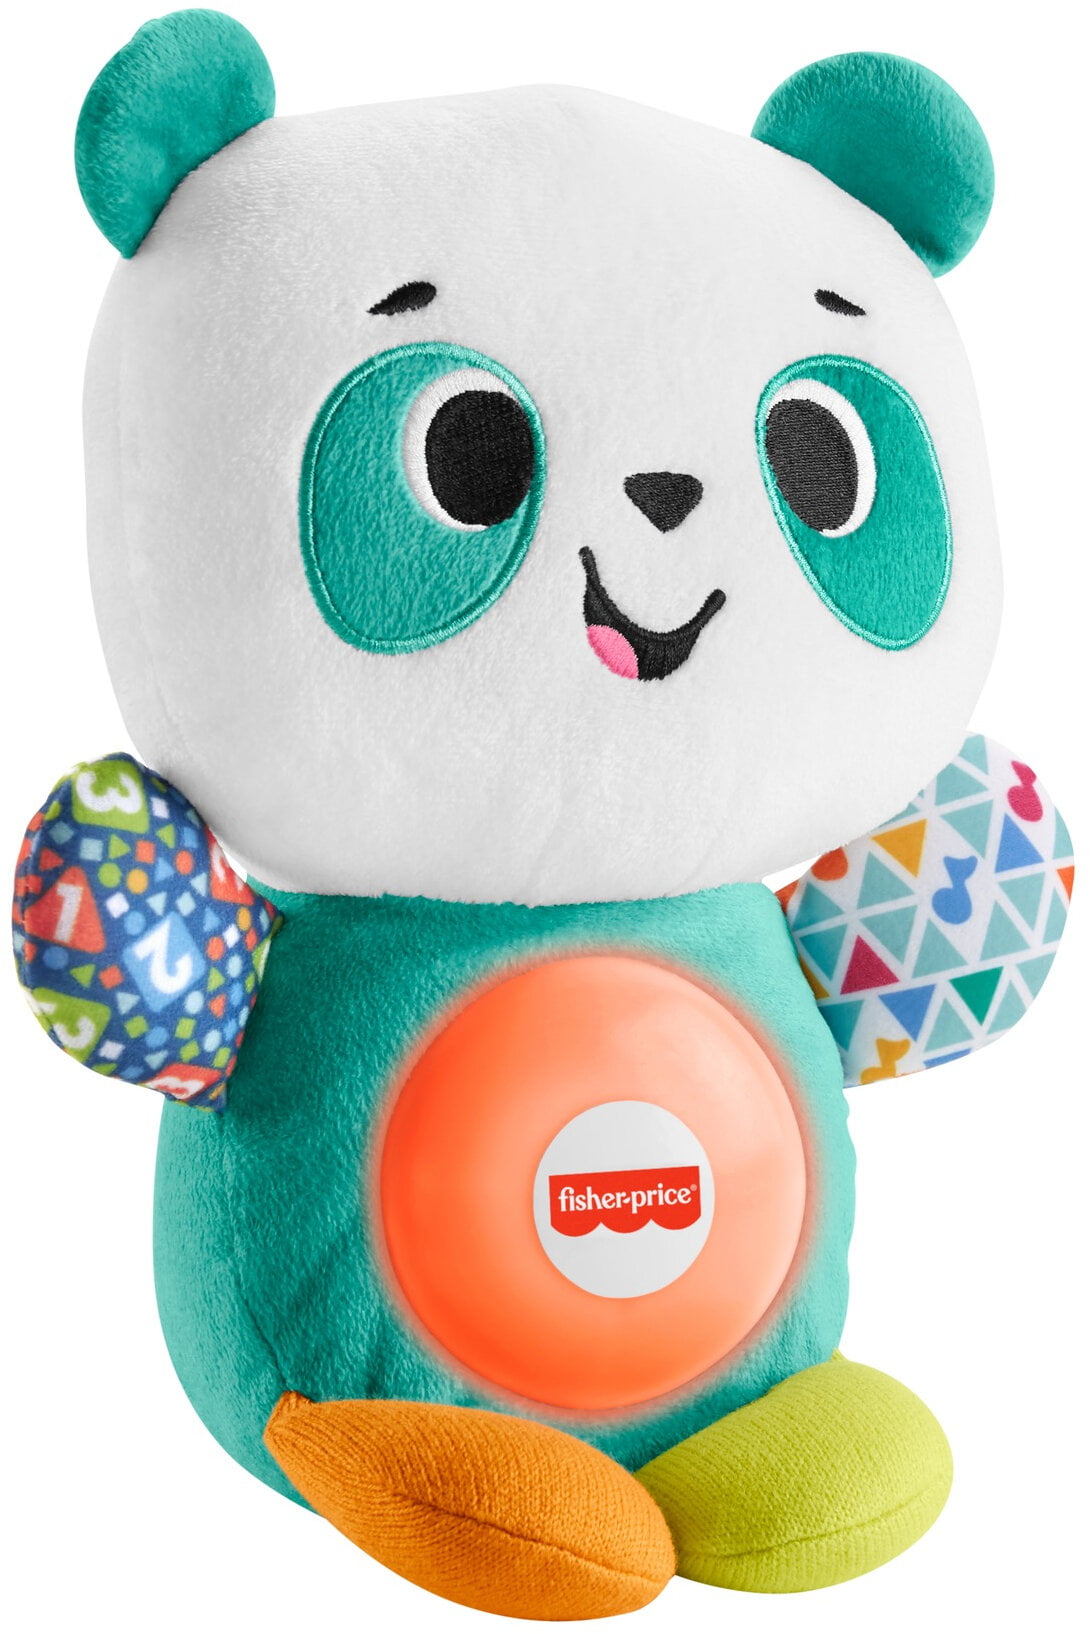 Fisher-Price linkimals spielen zusammen Panda interaktives Spielzeug für Kinder